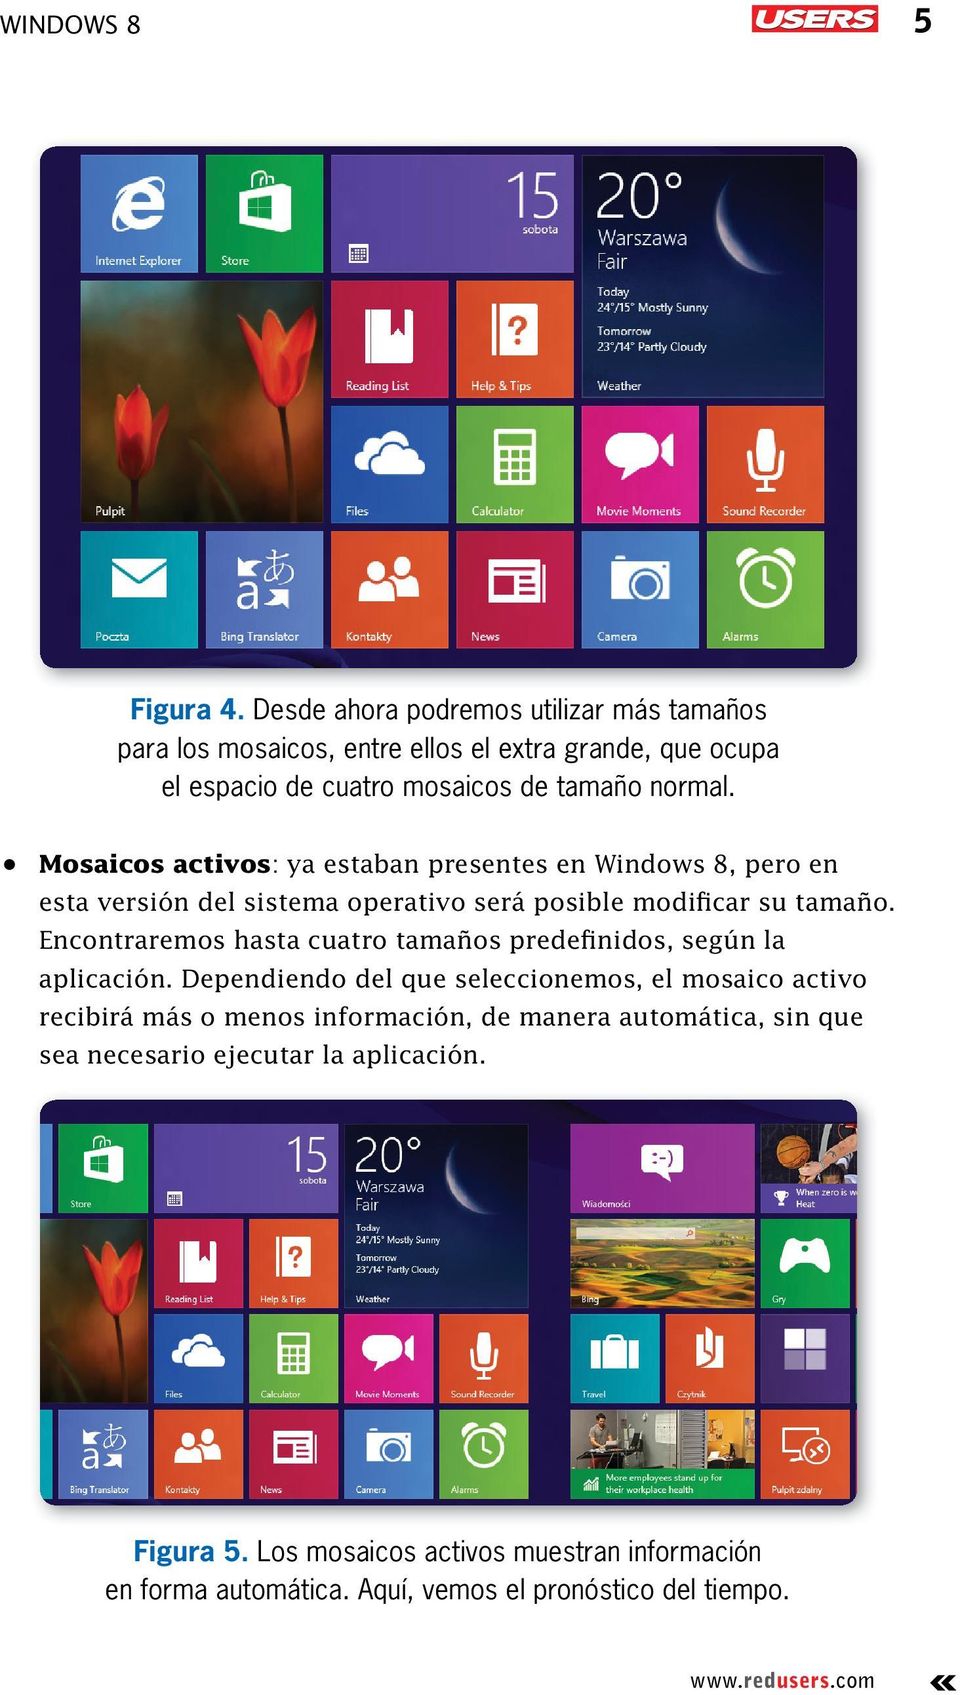 Mosaicos activos: ya estaban presentes en Windows 8, pero en esta versión del sistema operativo será posible modificar su tamaño.